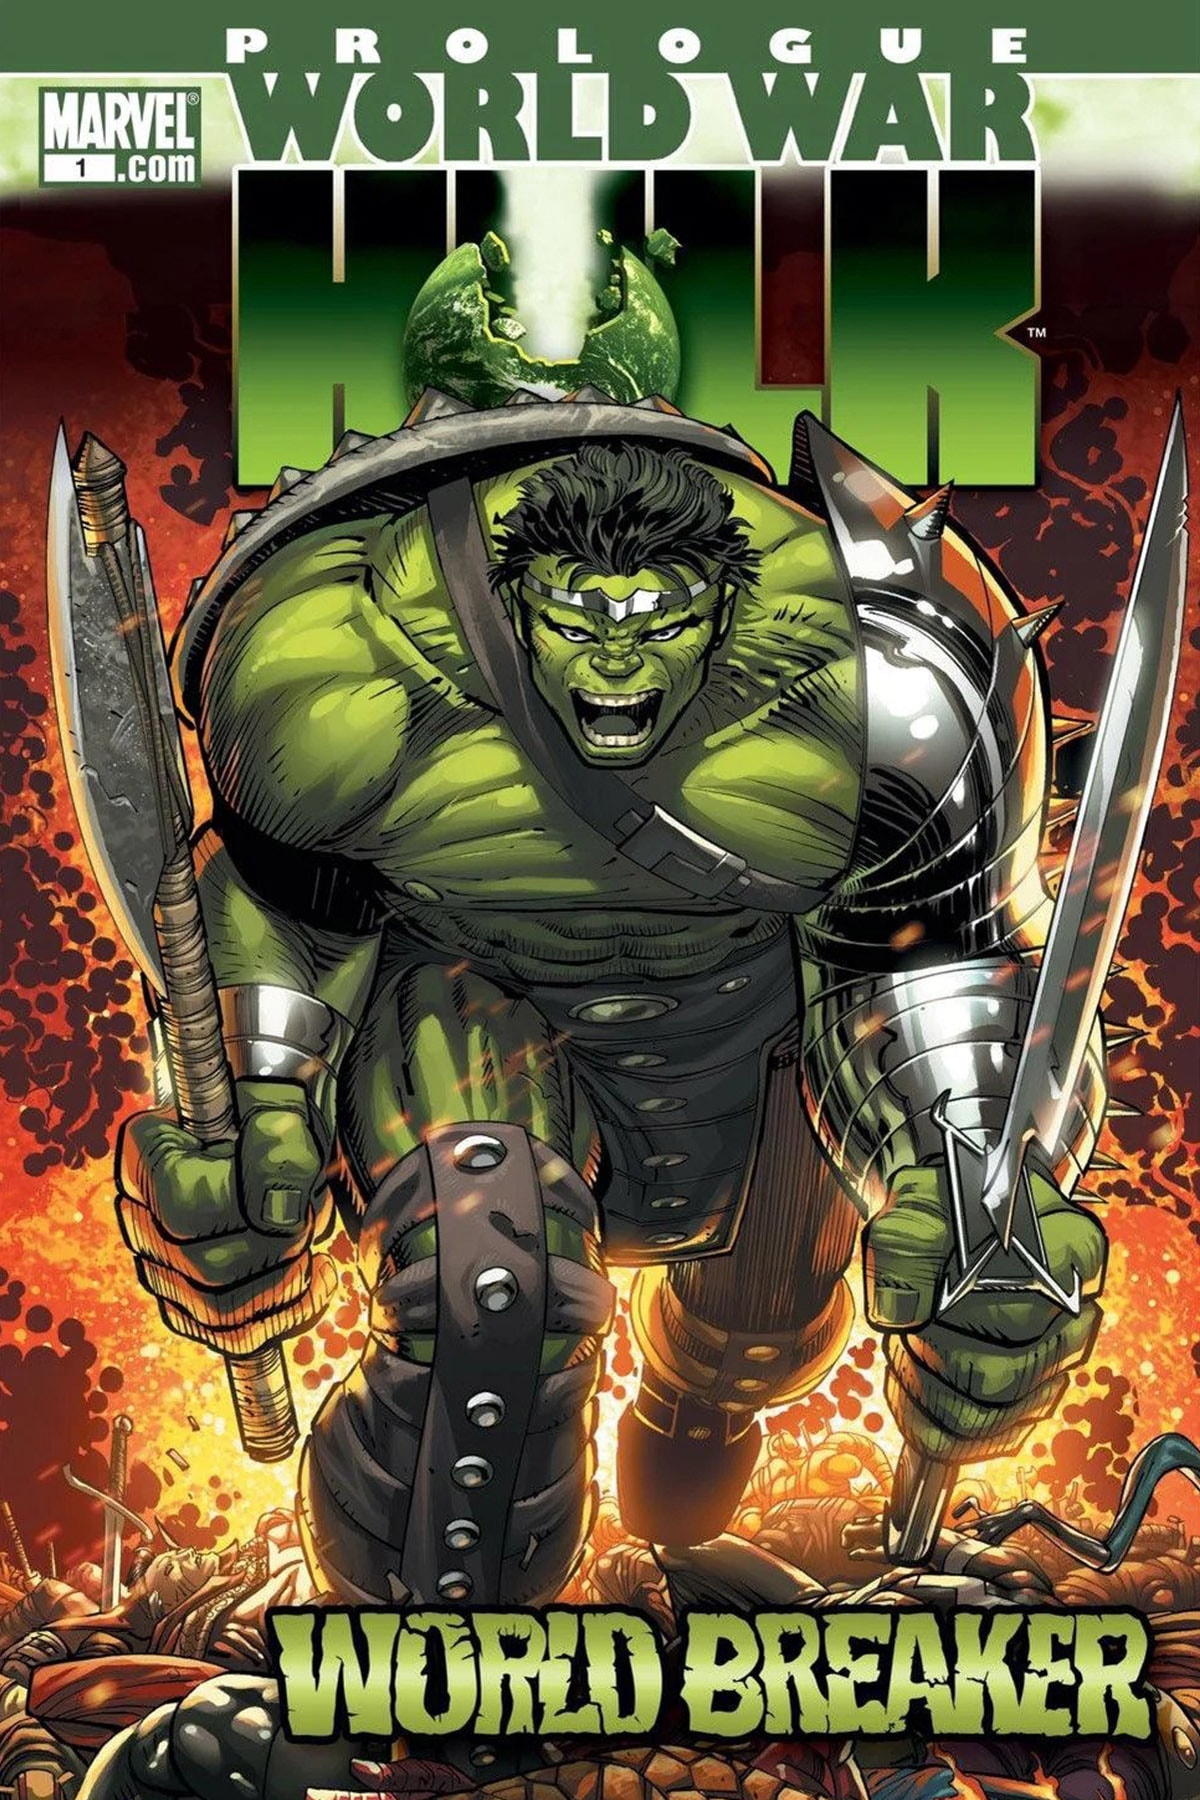 Mark Ruffalo 談論影集《She-Hulk》或將連動 Marvel Comics 大事件《World War Hulk》